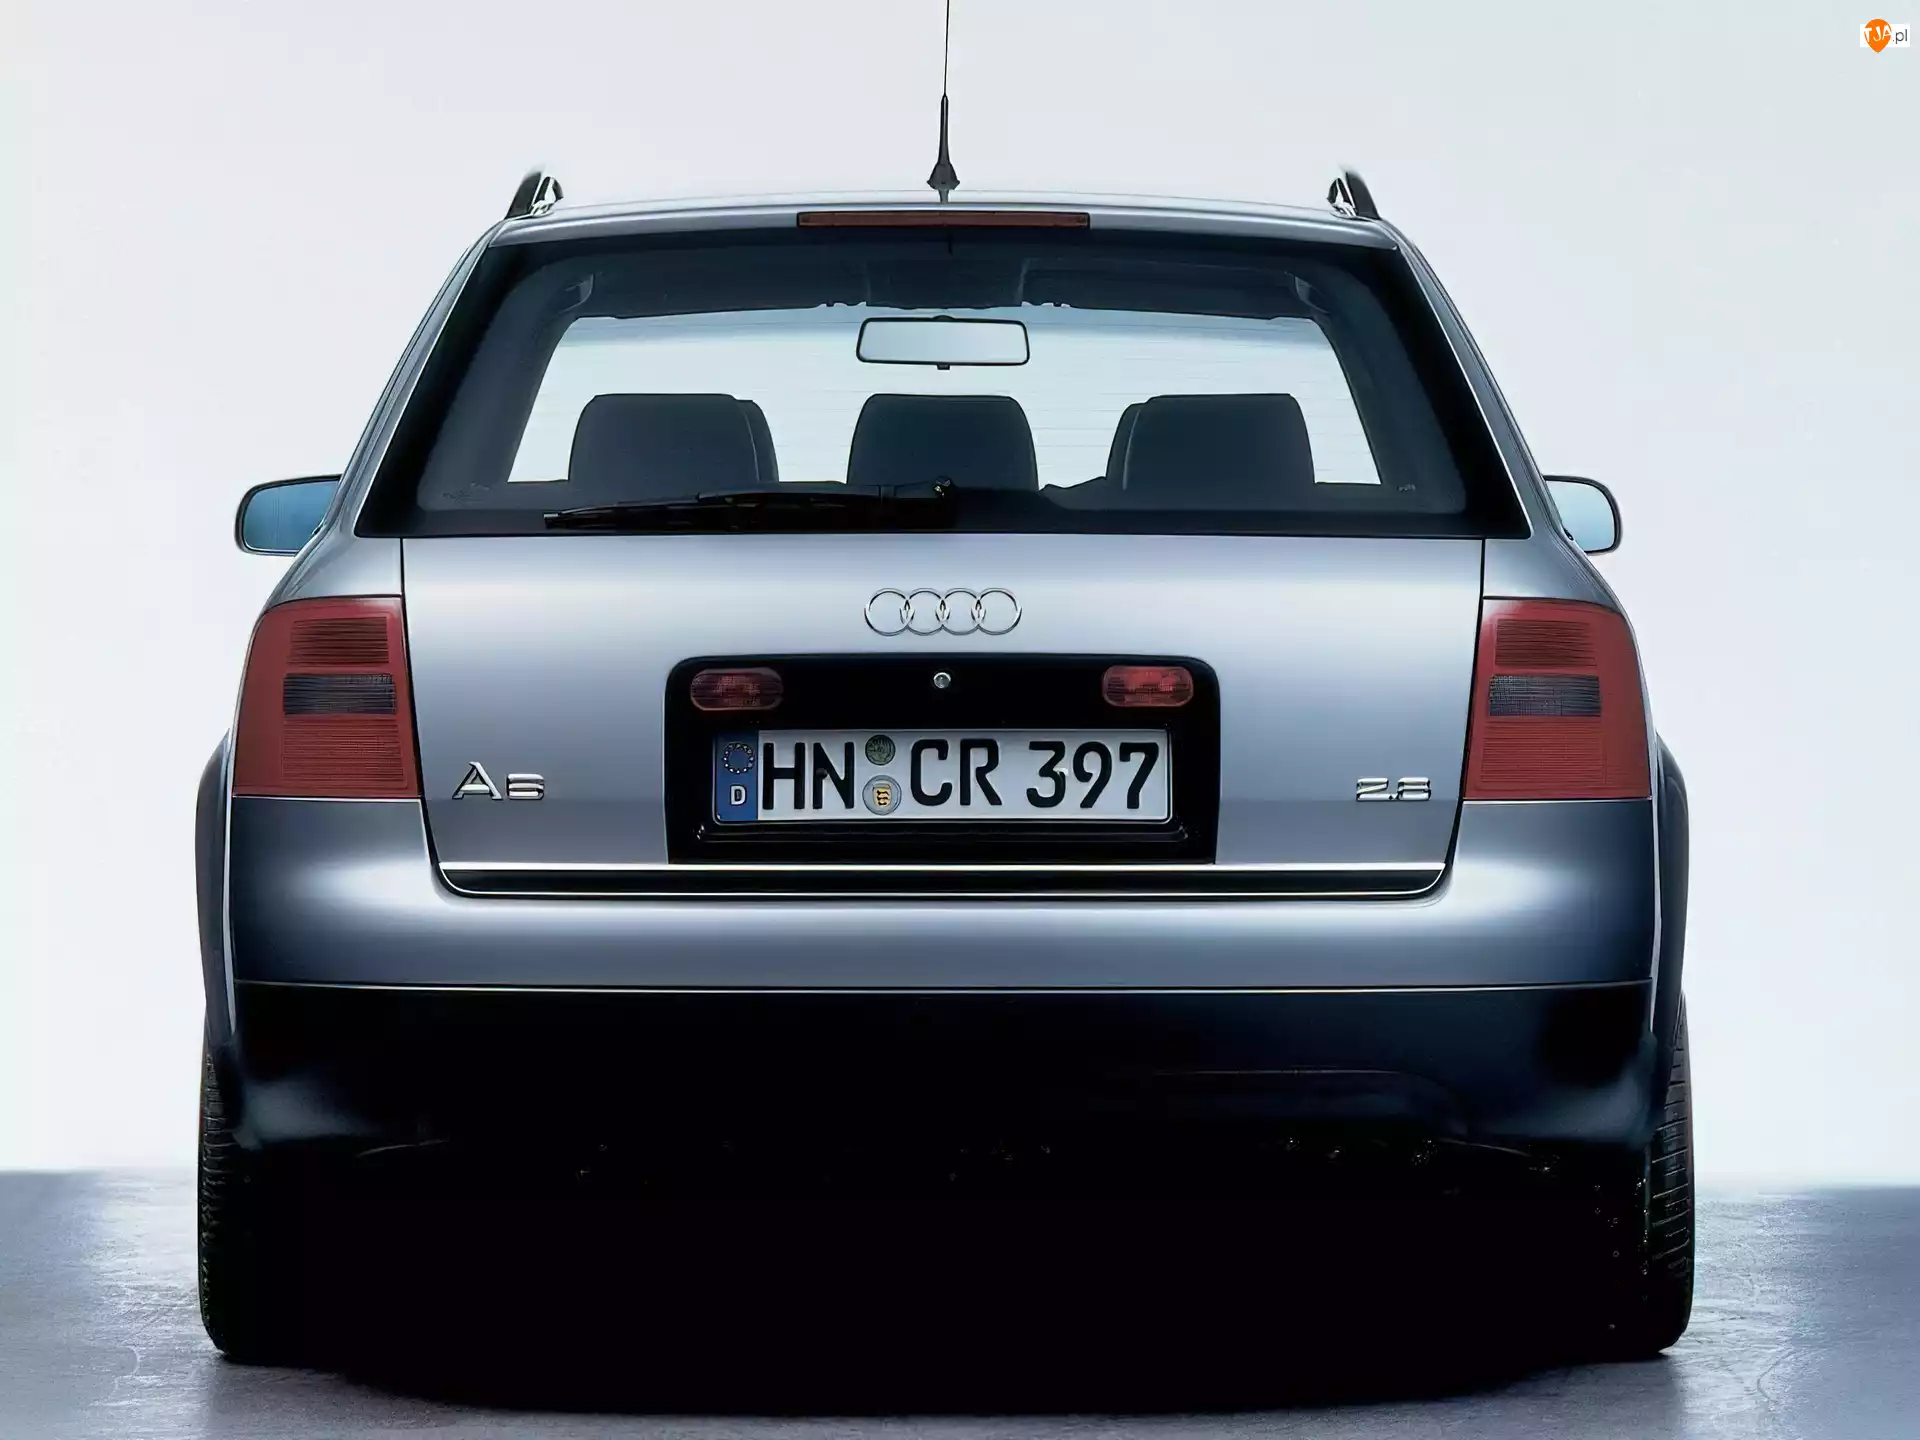 Tył, Audi A6, Avant